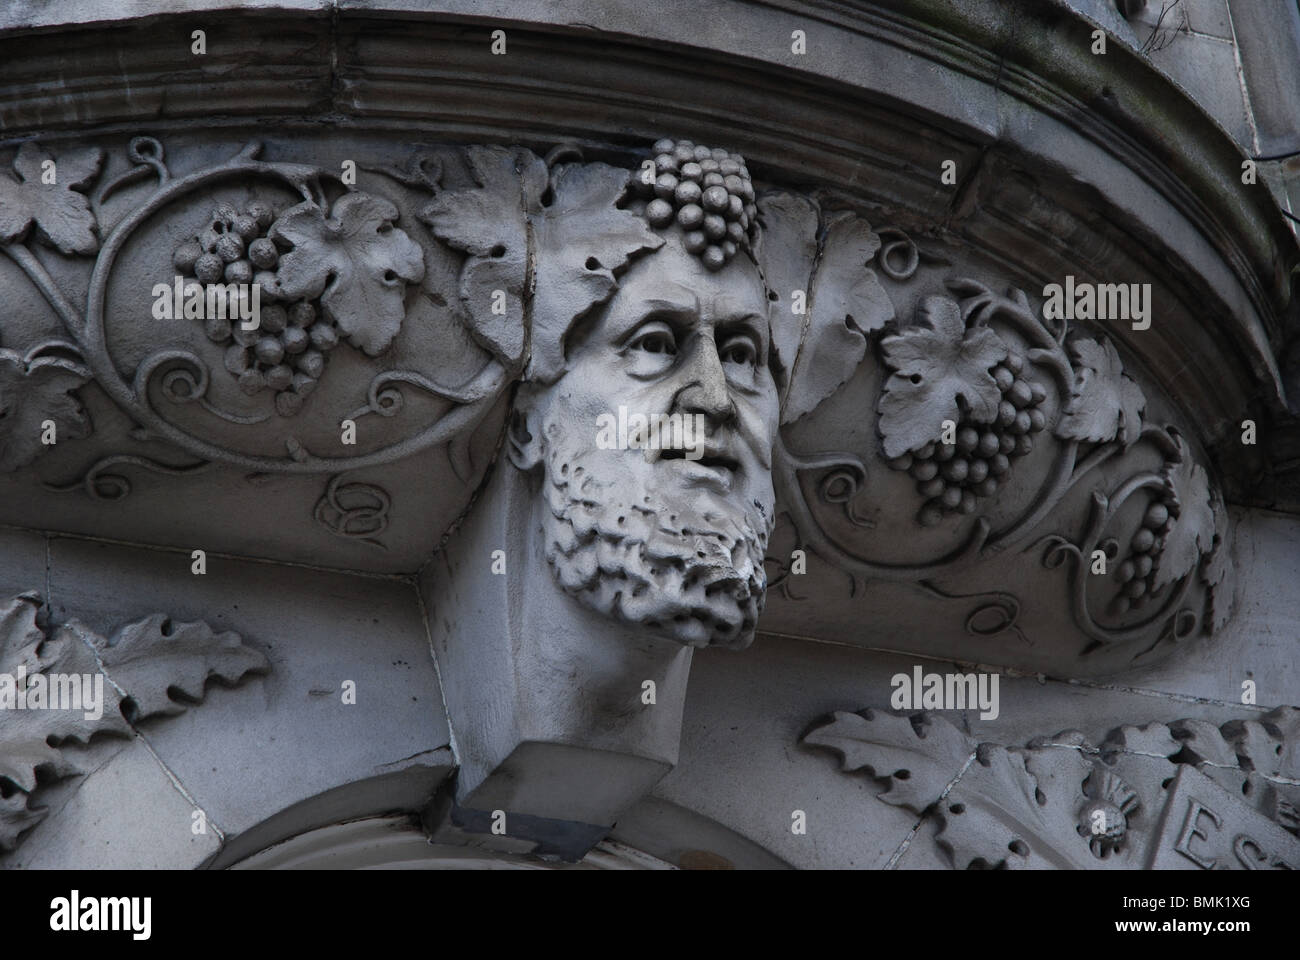 La tête de Bacchus, le dieu romain du vin et de l'intoxication, connu sous le nom de Dionysos Pour les Grecs, sur un bâtiment à Leith, Édimbourg. Banque D'Images